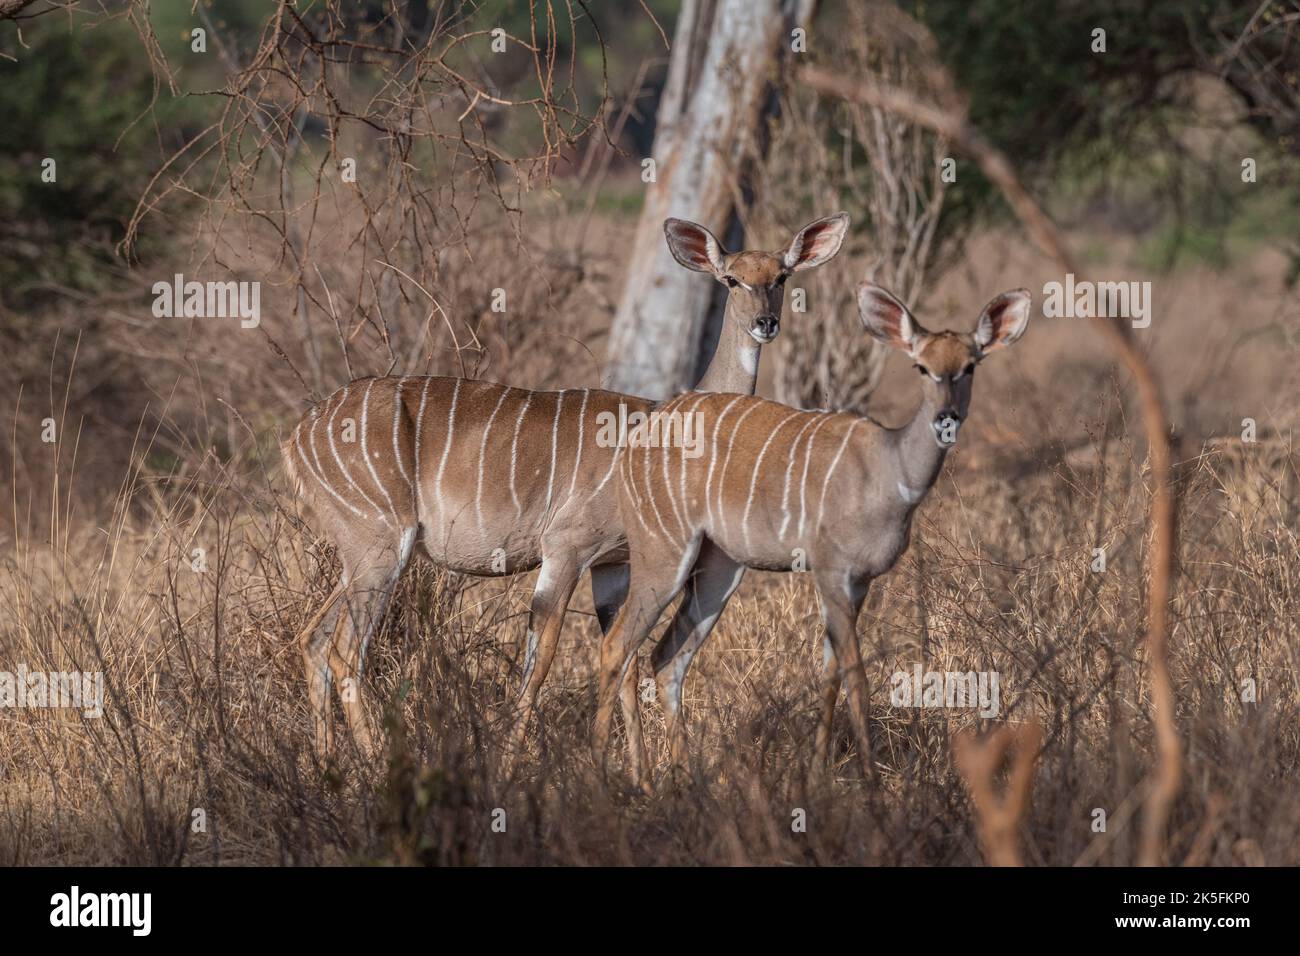 Mujer Lesser Kudu, Tragelaphus imberbis, Bovidae, Parque Nacional Tsavo Este, Kenia, África Foto de stock